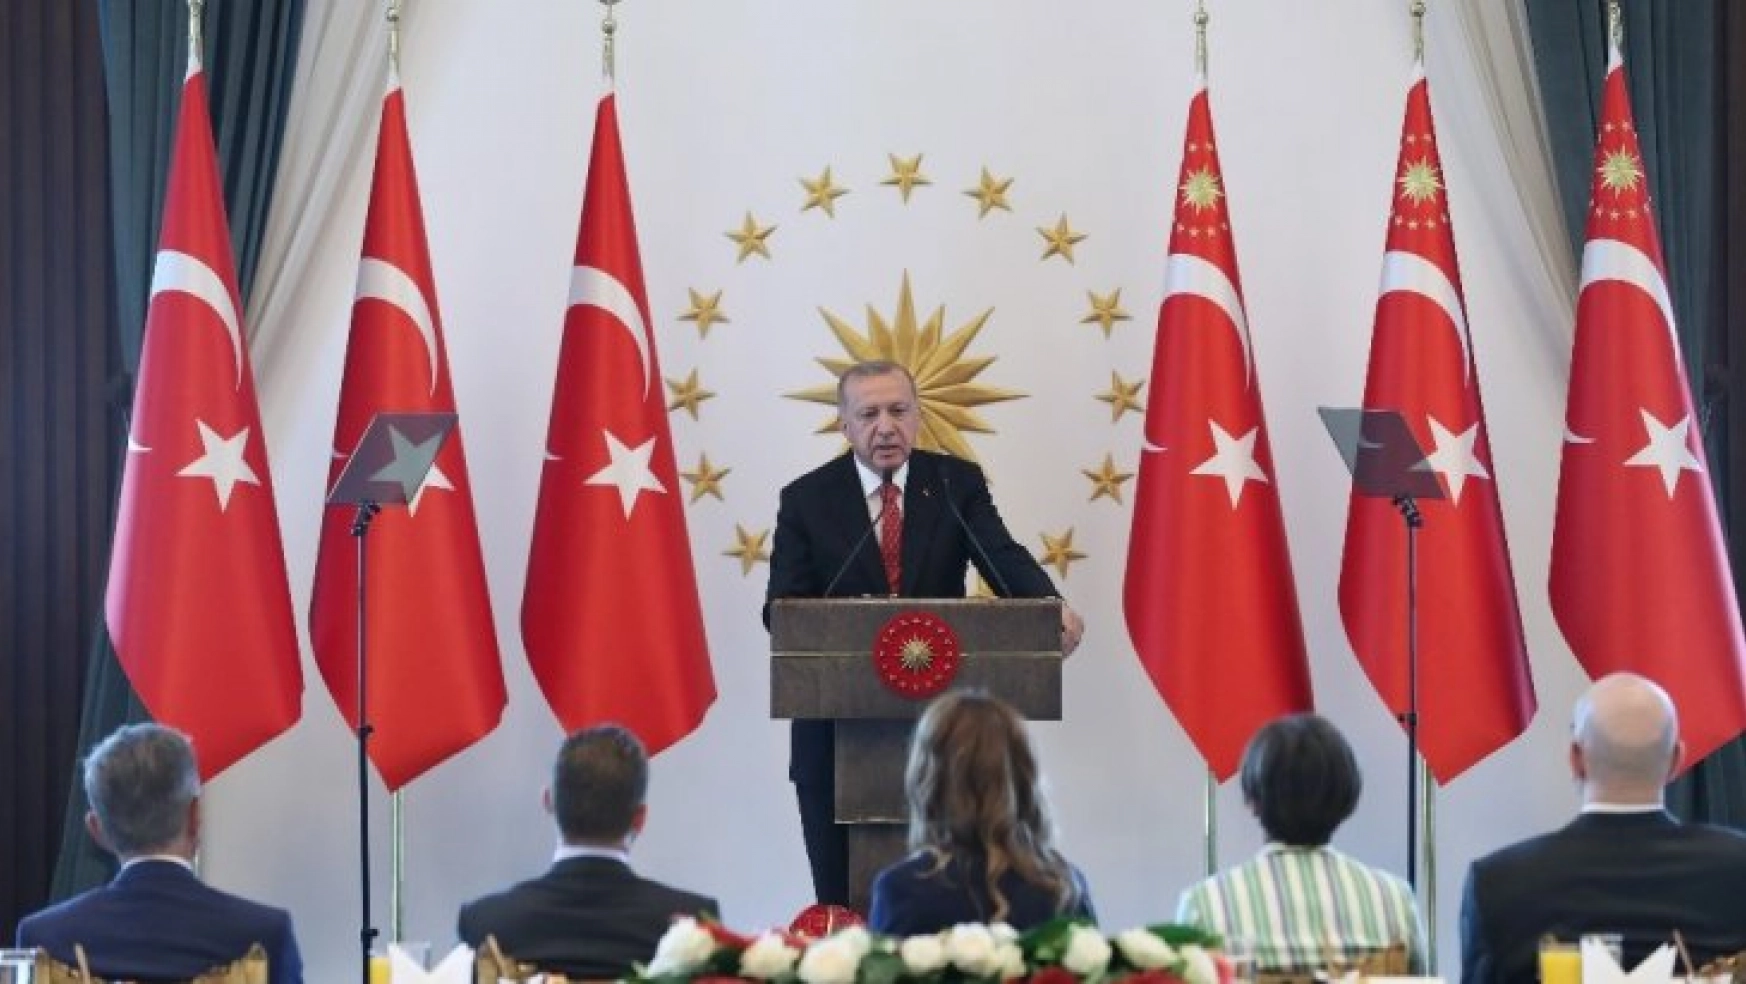 Cumhurbaşkanı Erdoğan'dan güvenli bölge açıklaması